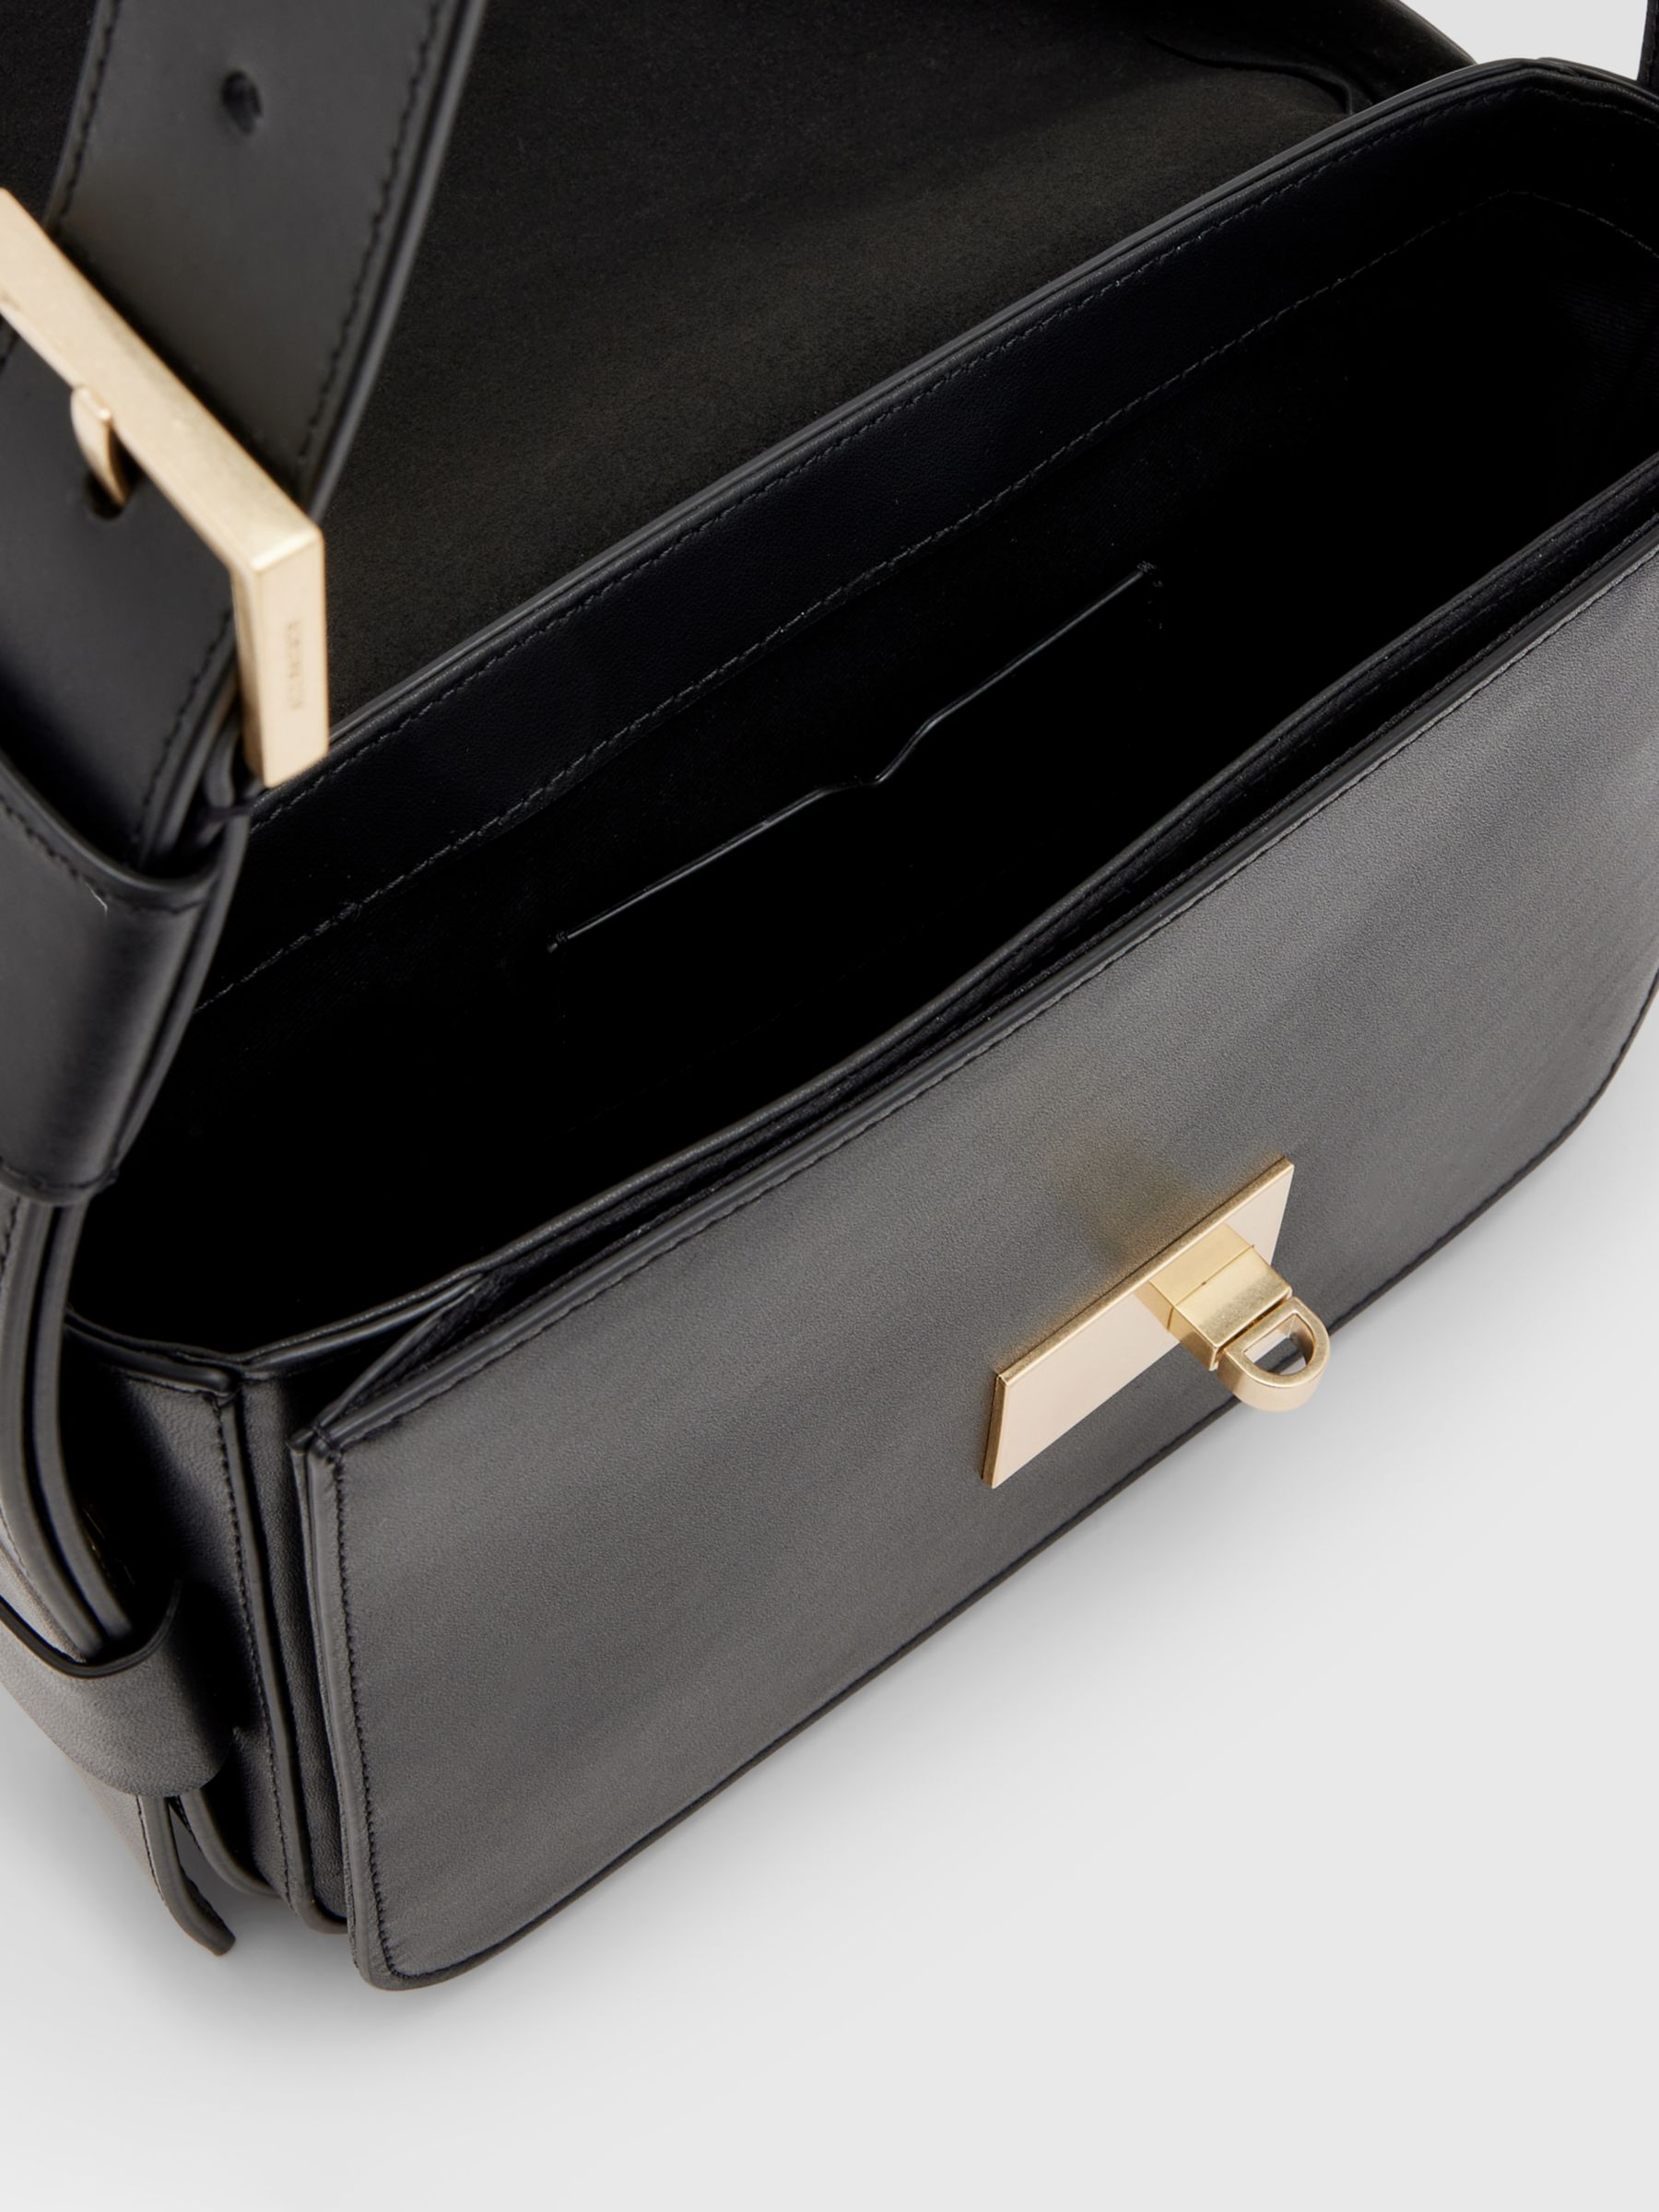 AllSaints Etienne Leather Shoulder Bag, Black at John Lewis & Partners